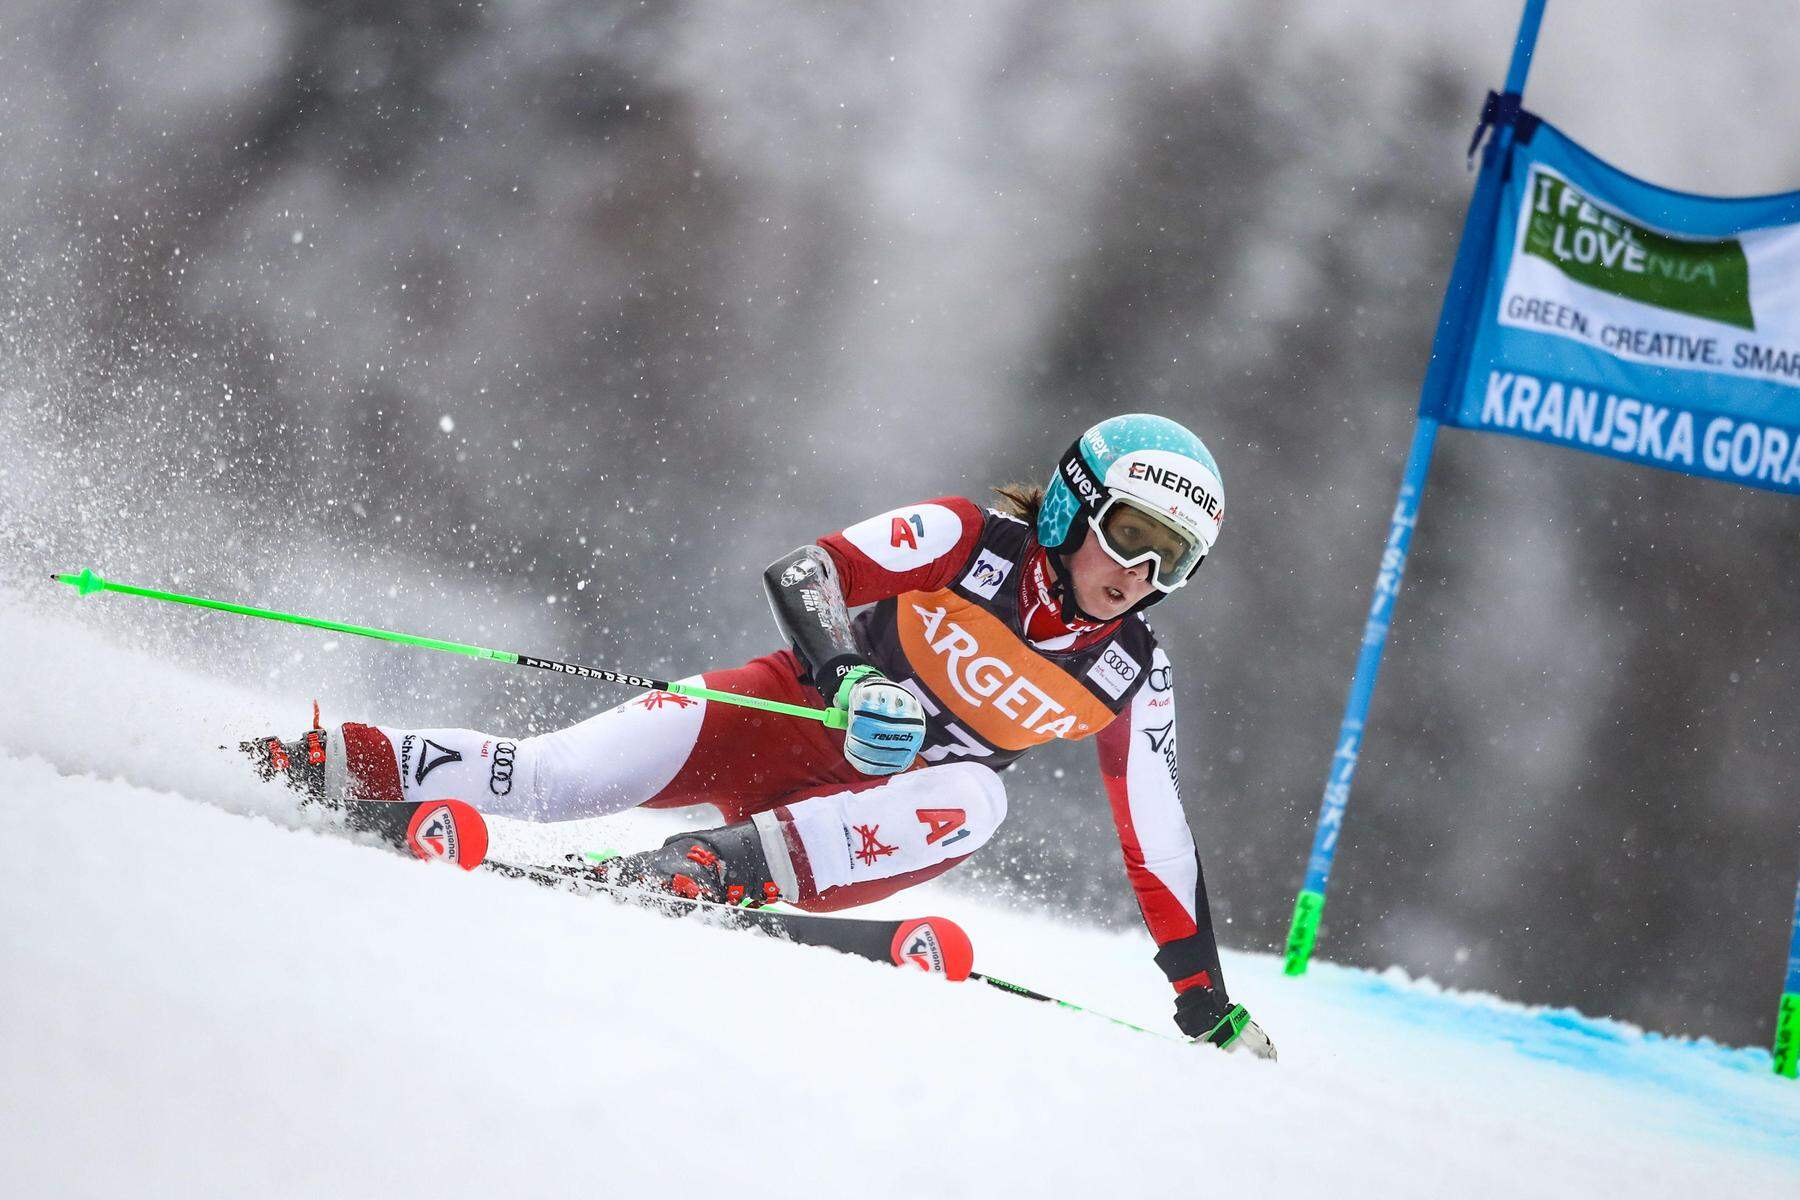 Rücktritt im Ski-Weltcup: ÖSV-Ass beendet die Karriere: „Ich empfinde keine Freude mehr“